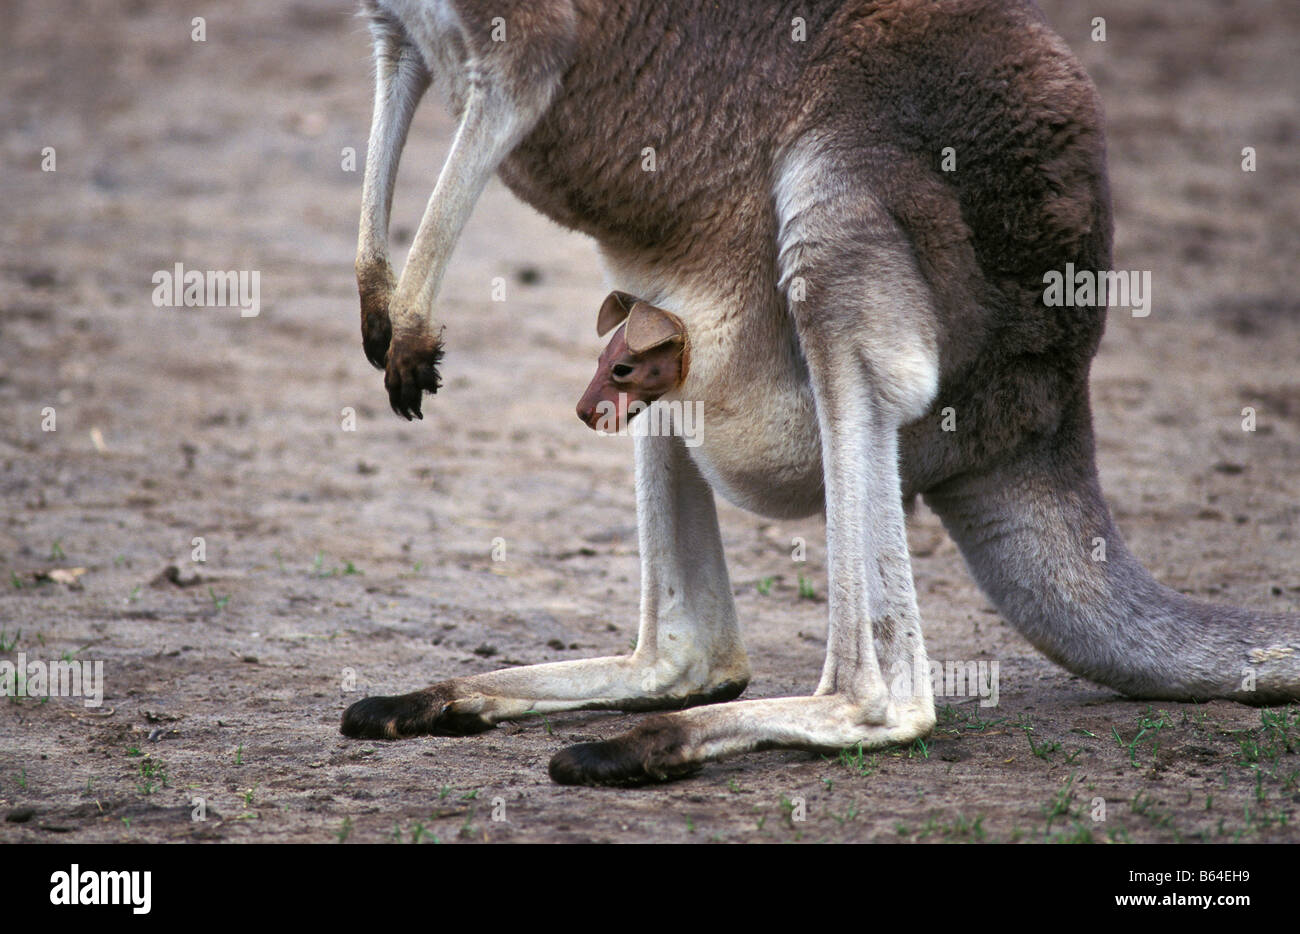 Holland, die Niederlande, Emmen. Zoo: Noorder Dierenpark. Westliche graue Känguru. (Macropus Fuliginosos). Stockfoto